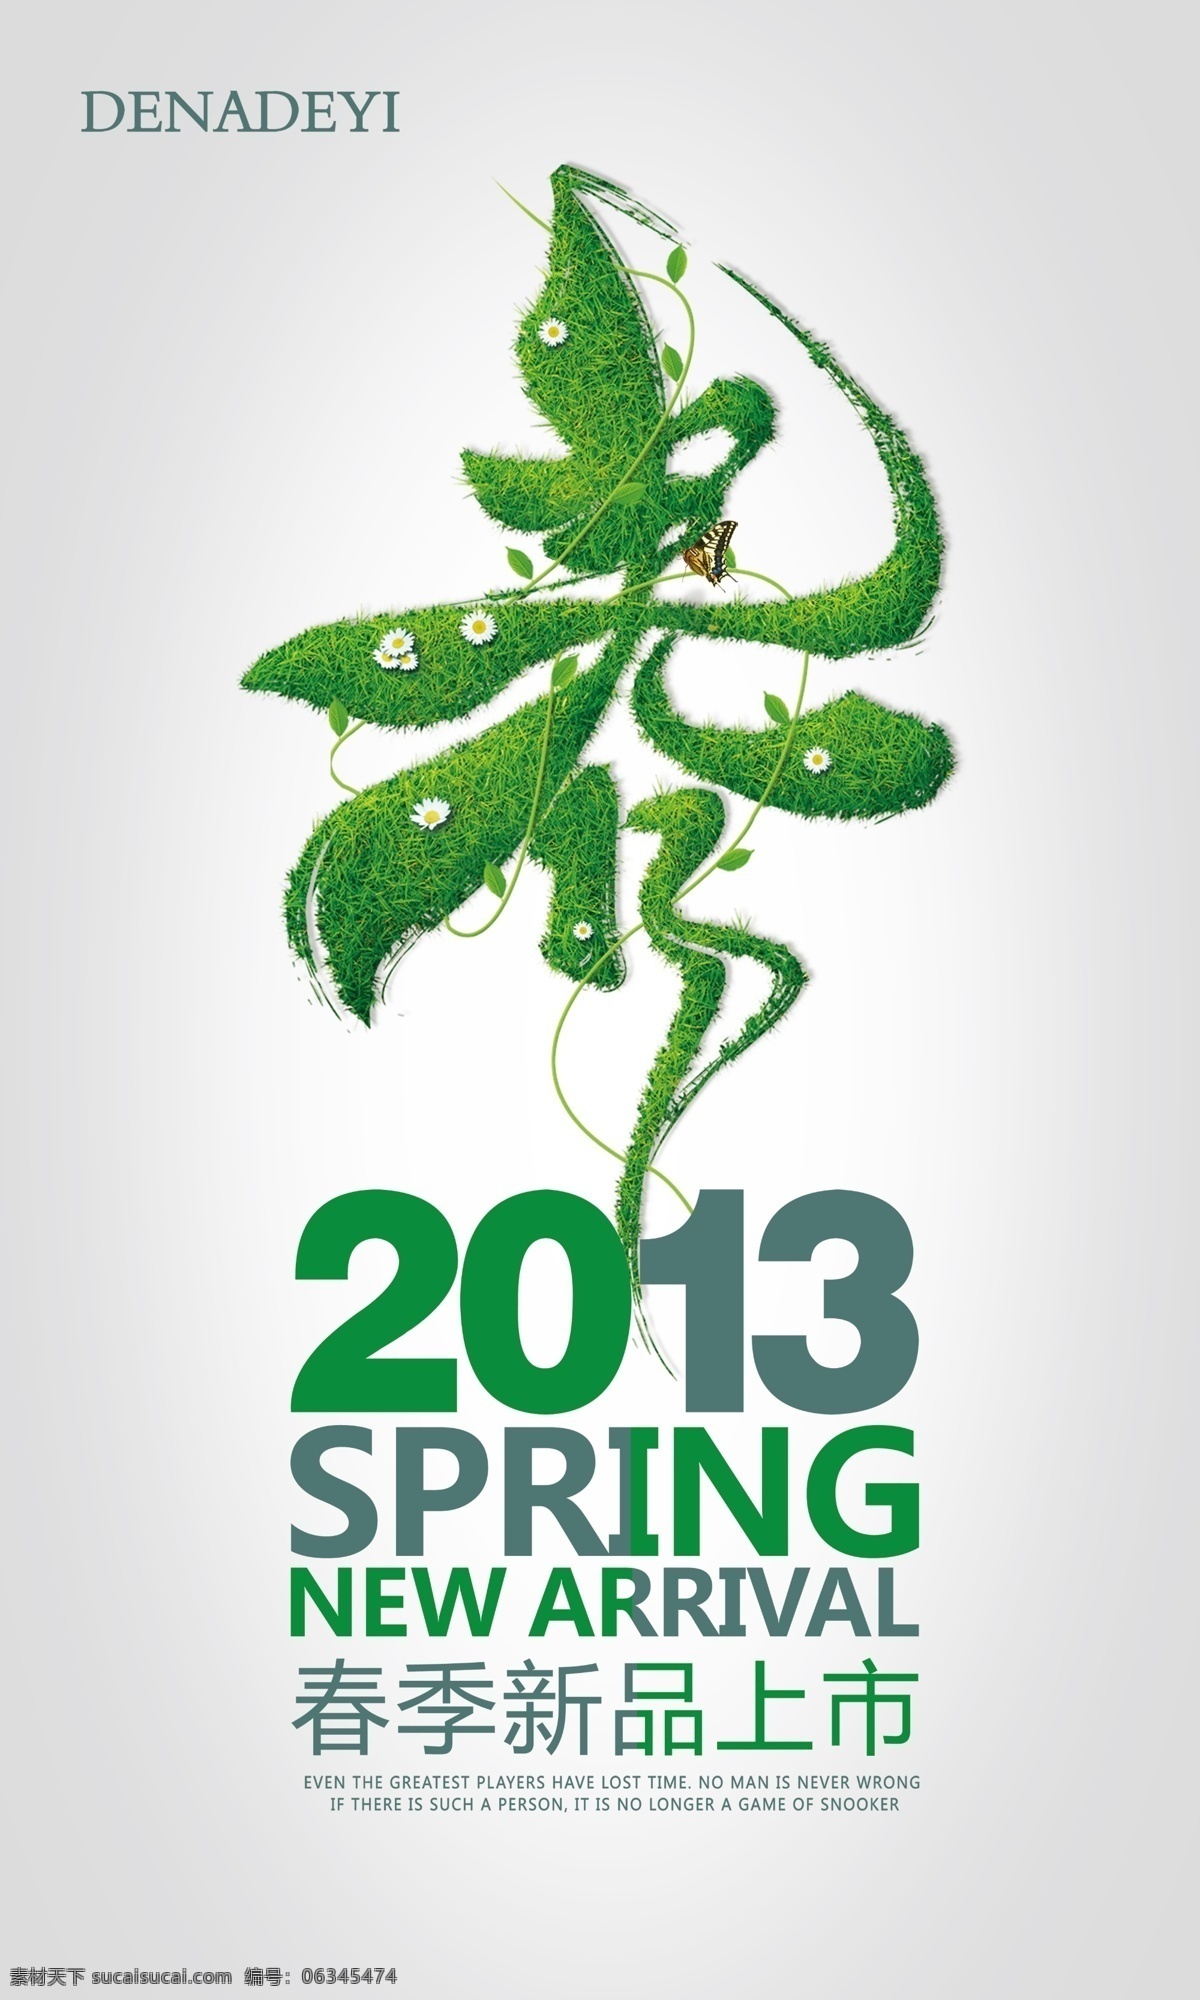 春季 新品上市 2013 春 春季新品上市 广告设计模板 灰色 绿色 源文件 迪安帝尼 其他海报设计